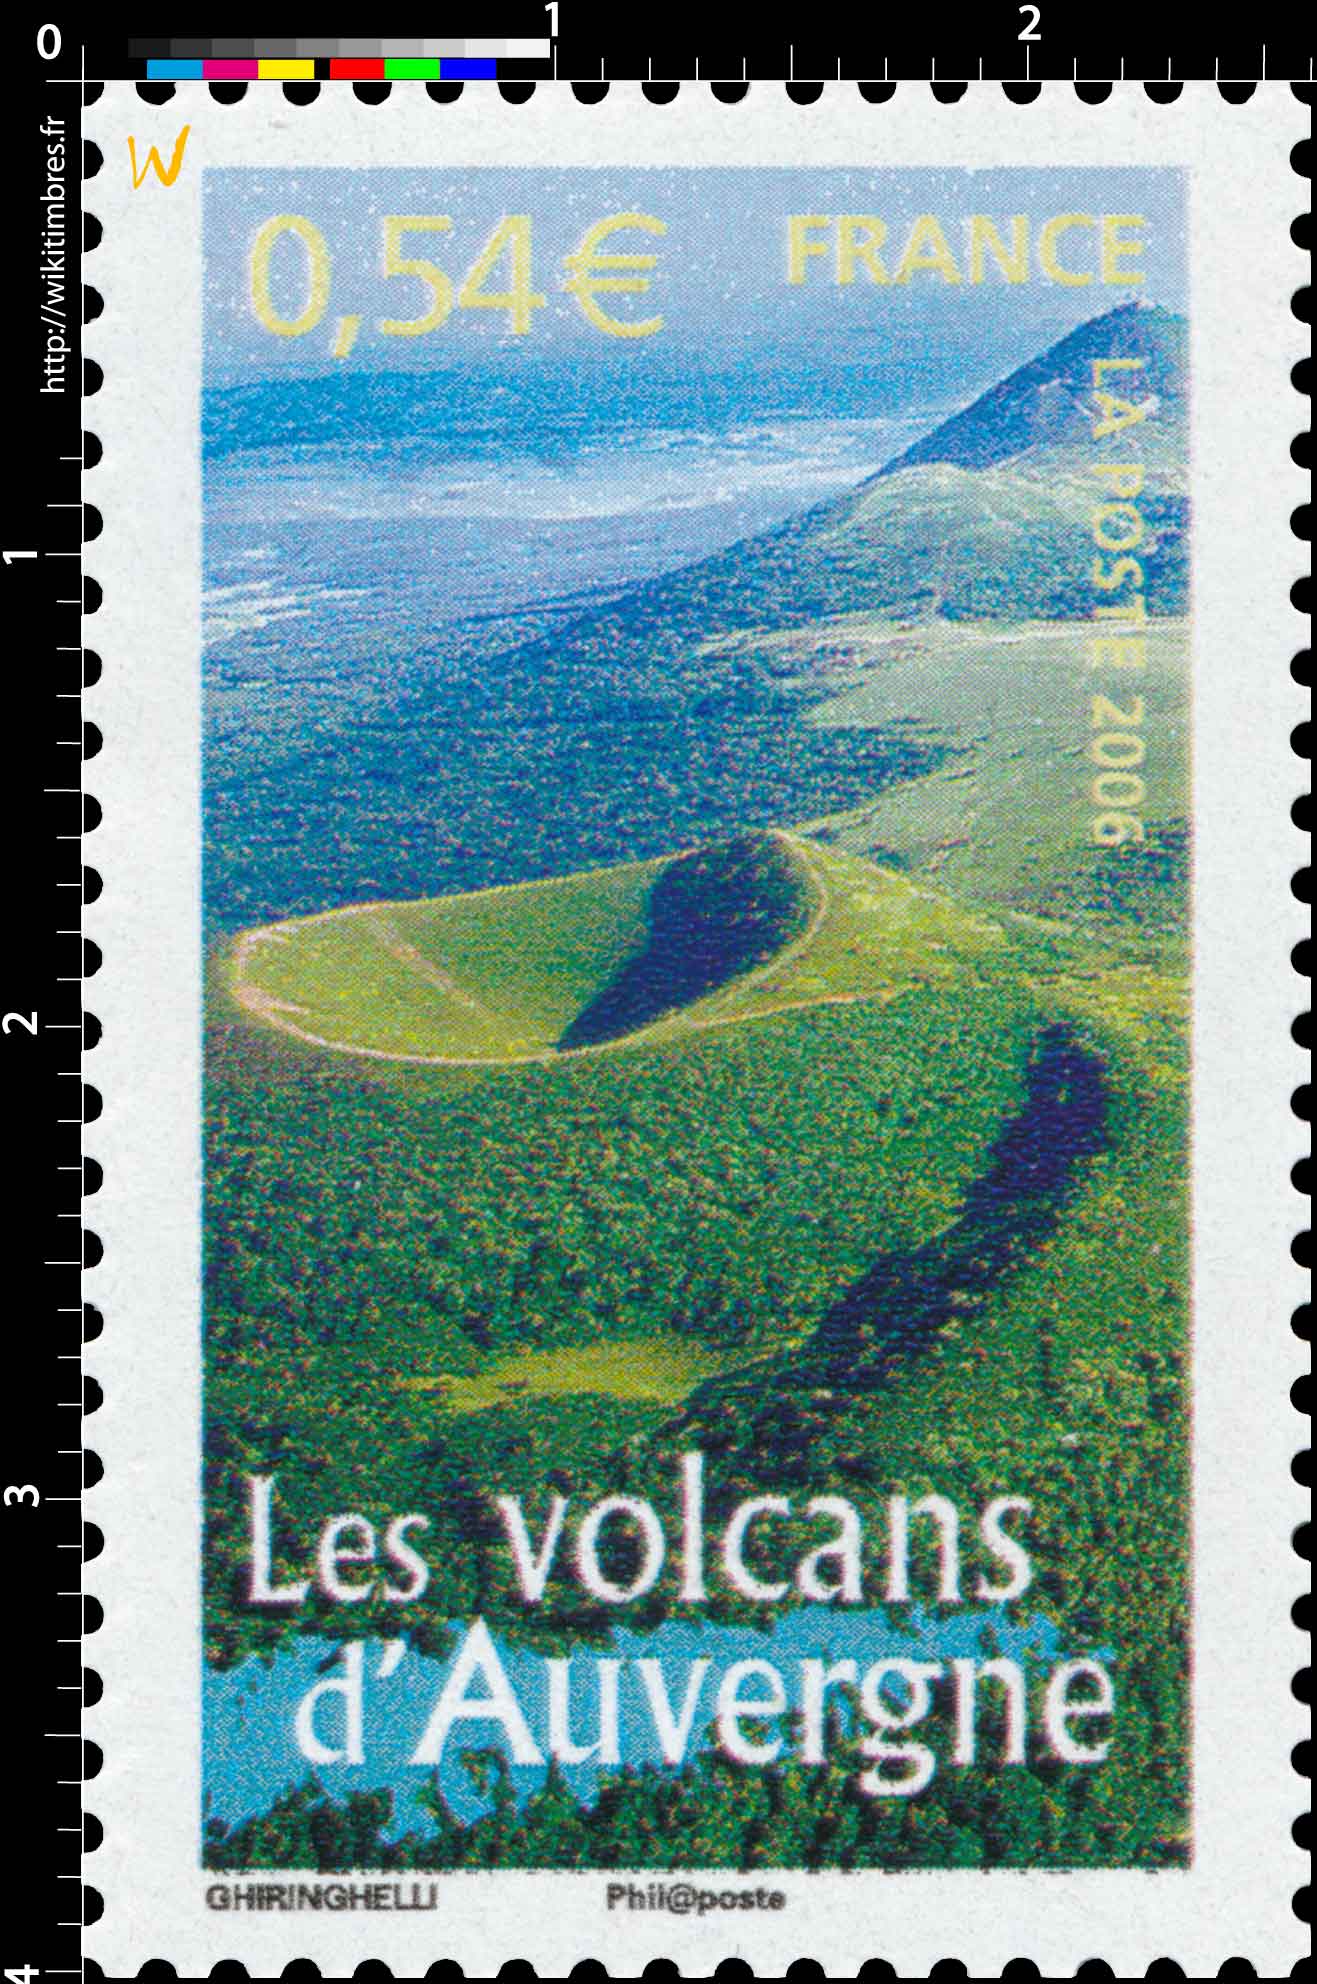 2006 Les volcans d'Auvergne